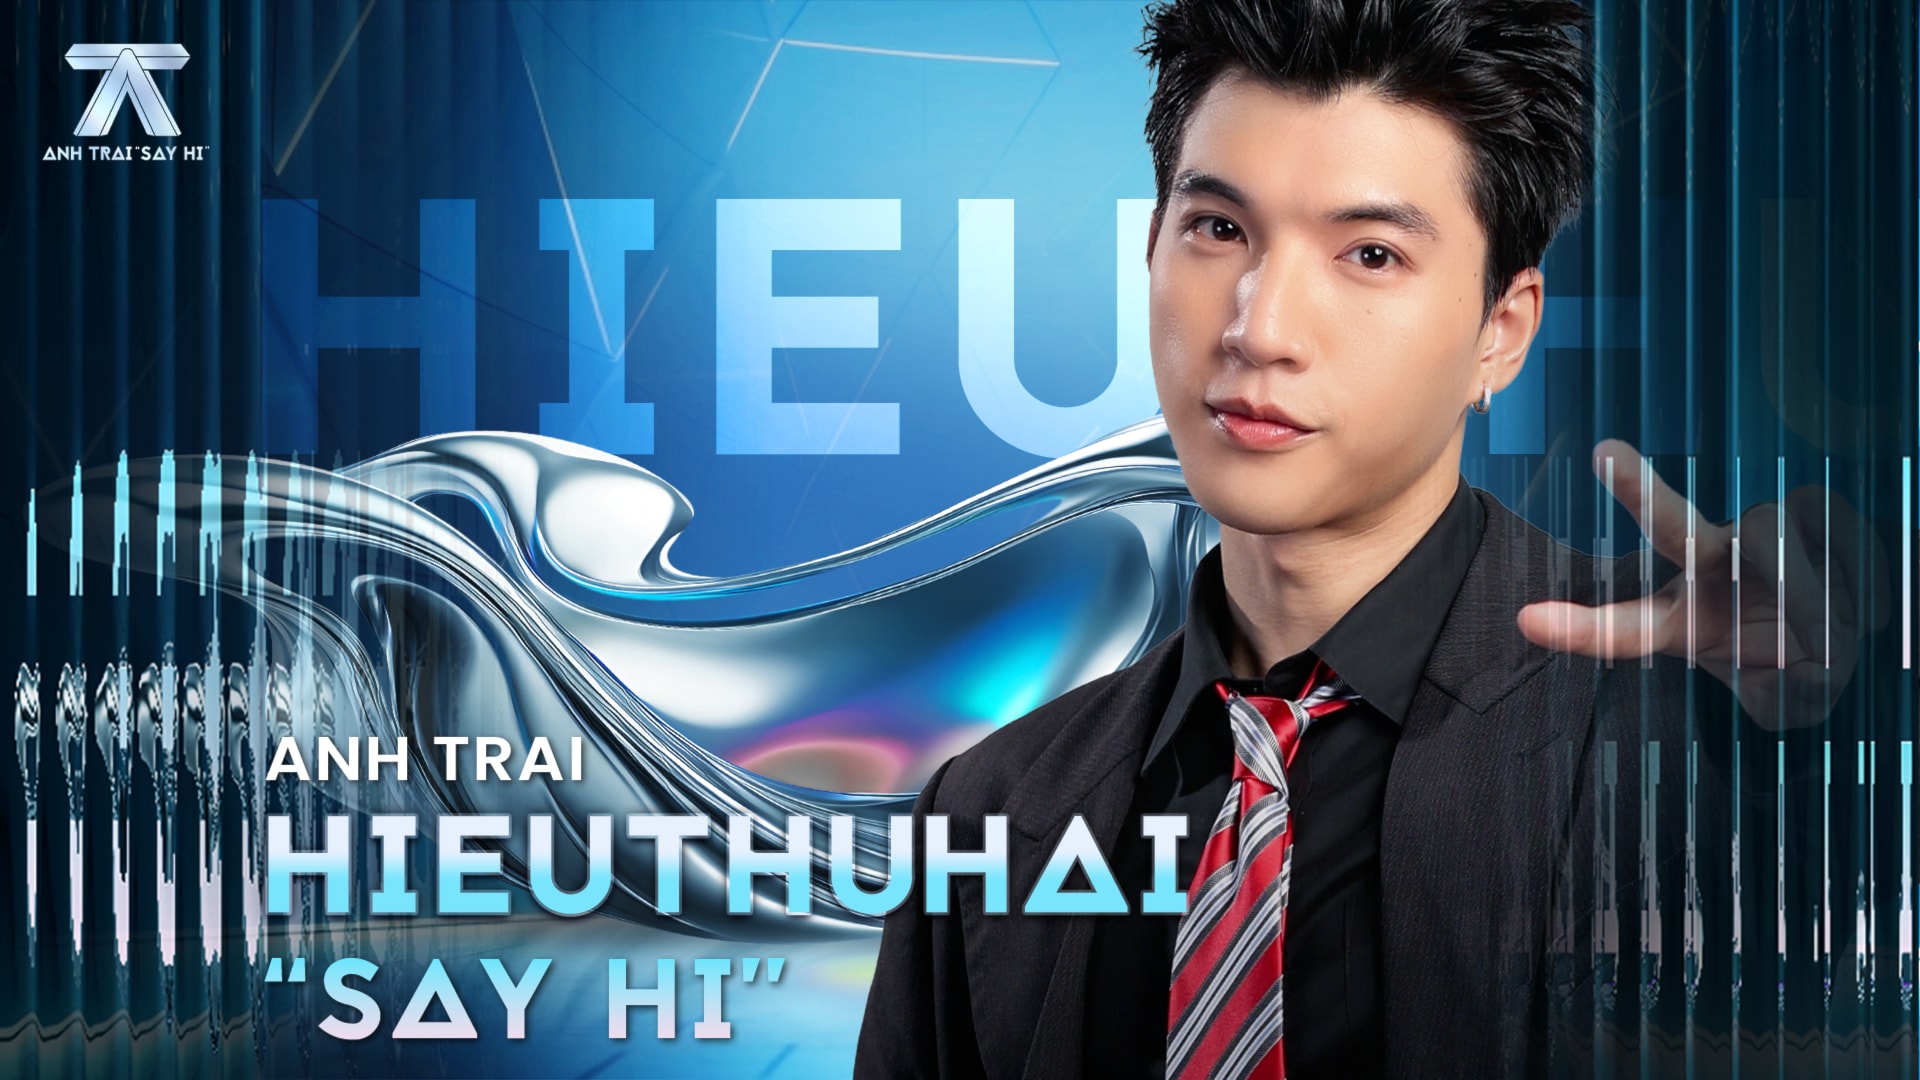 Hieuthuhai được xem là một trong những “trụ cột” visual hút fan cho chương trình